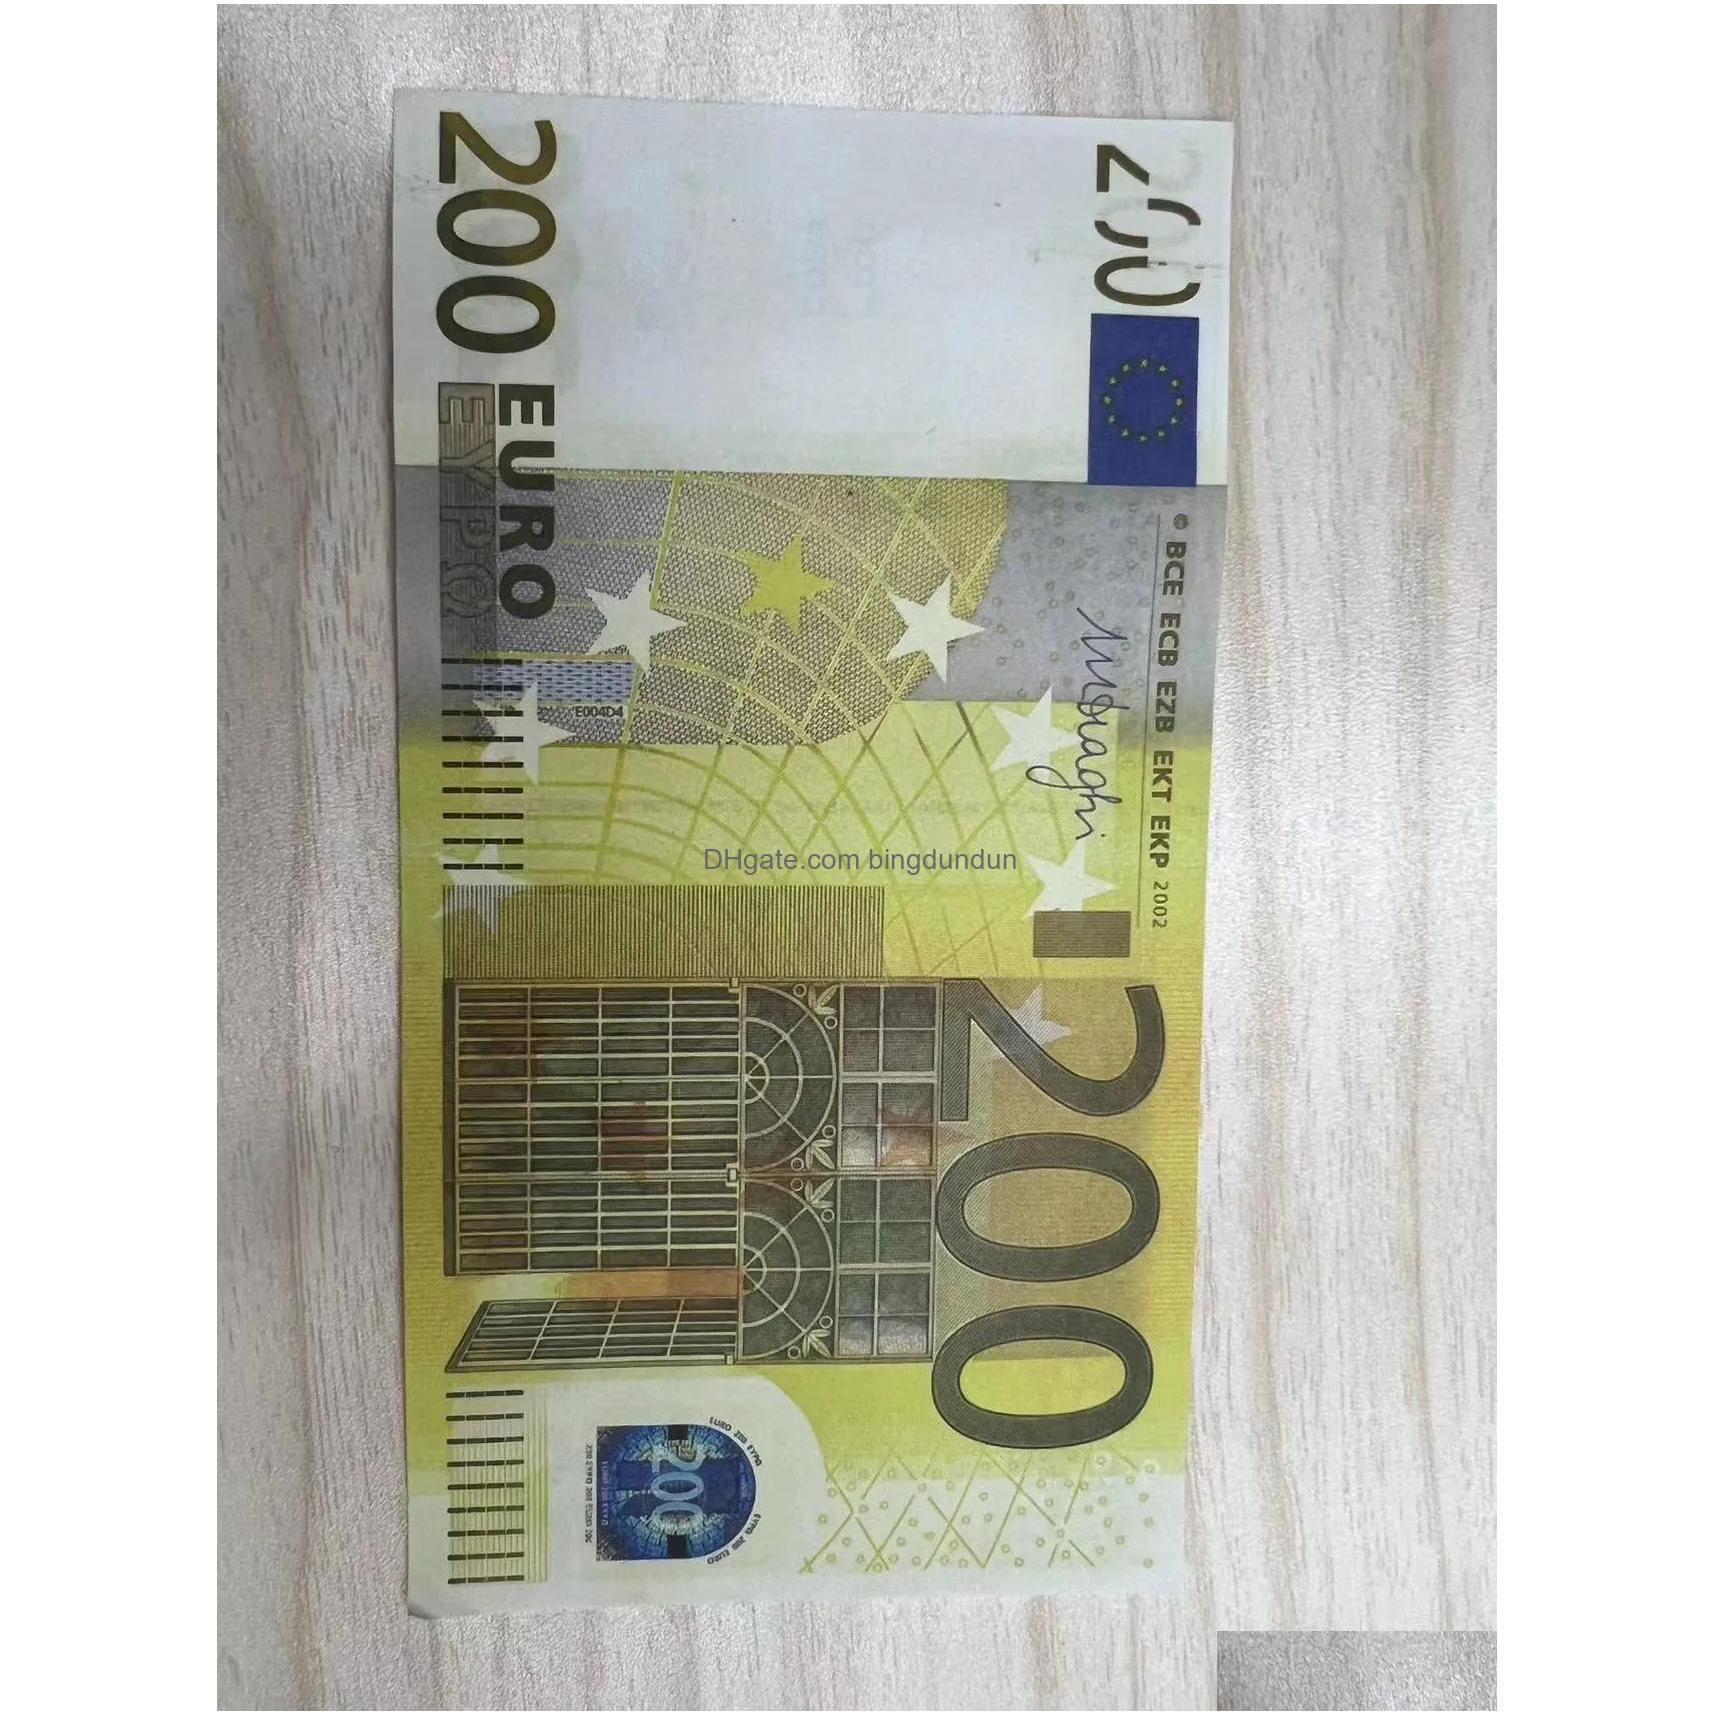 200euro